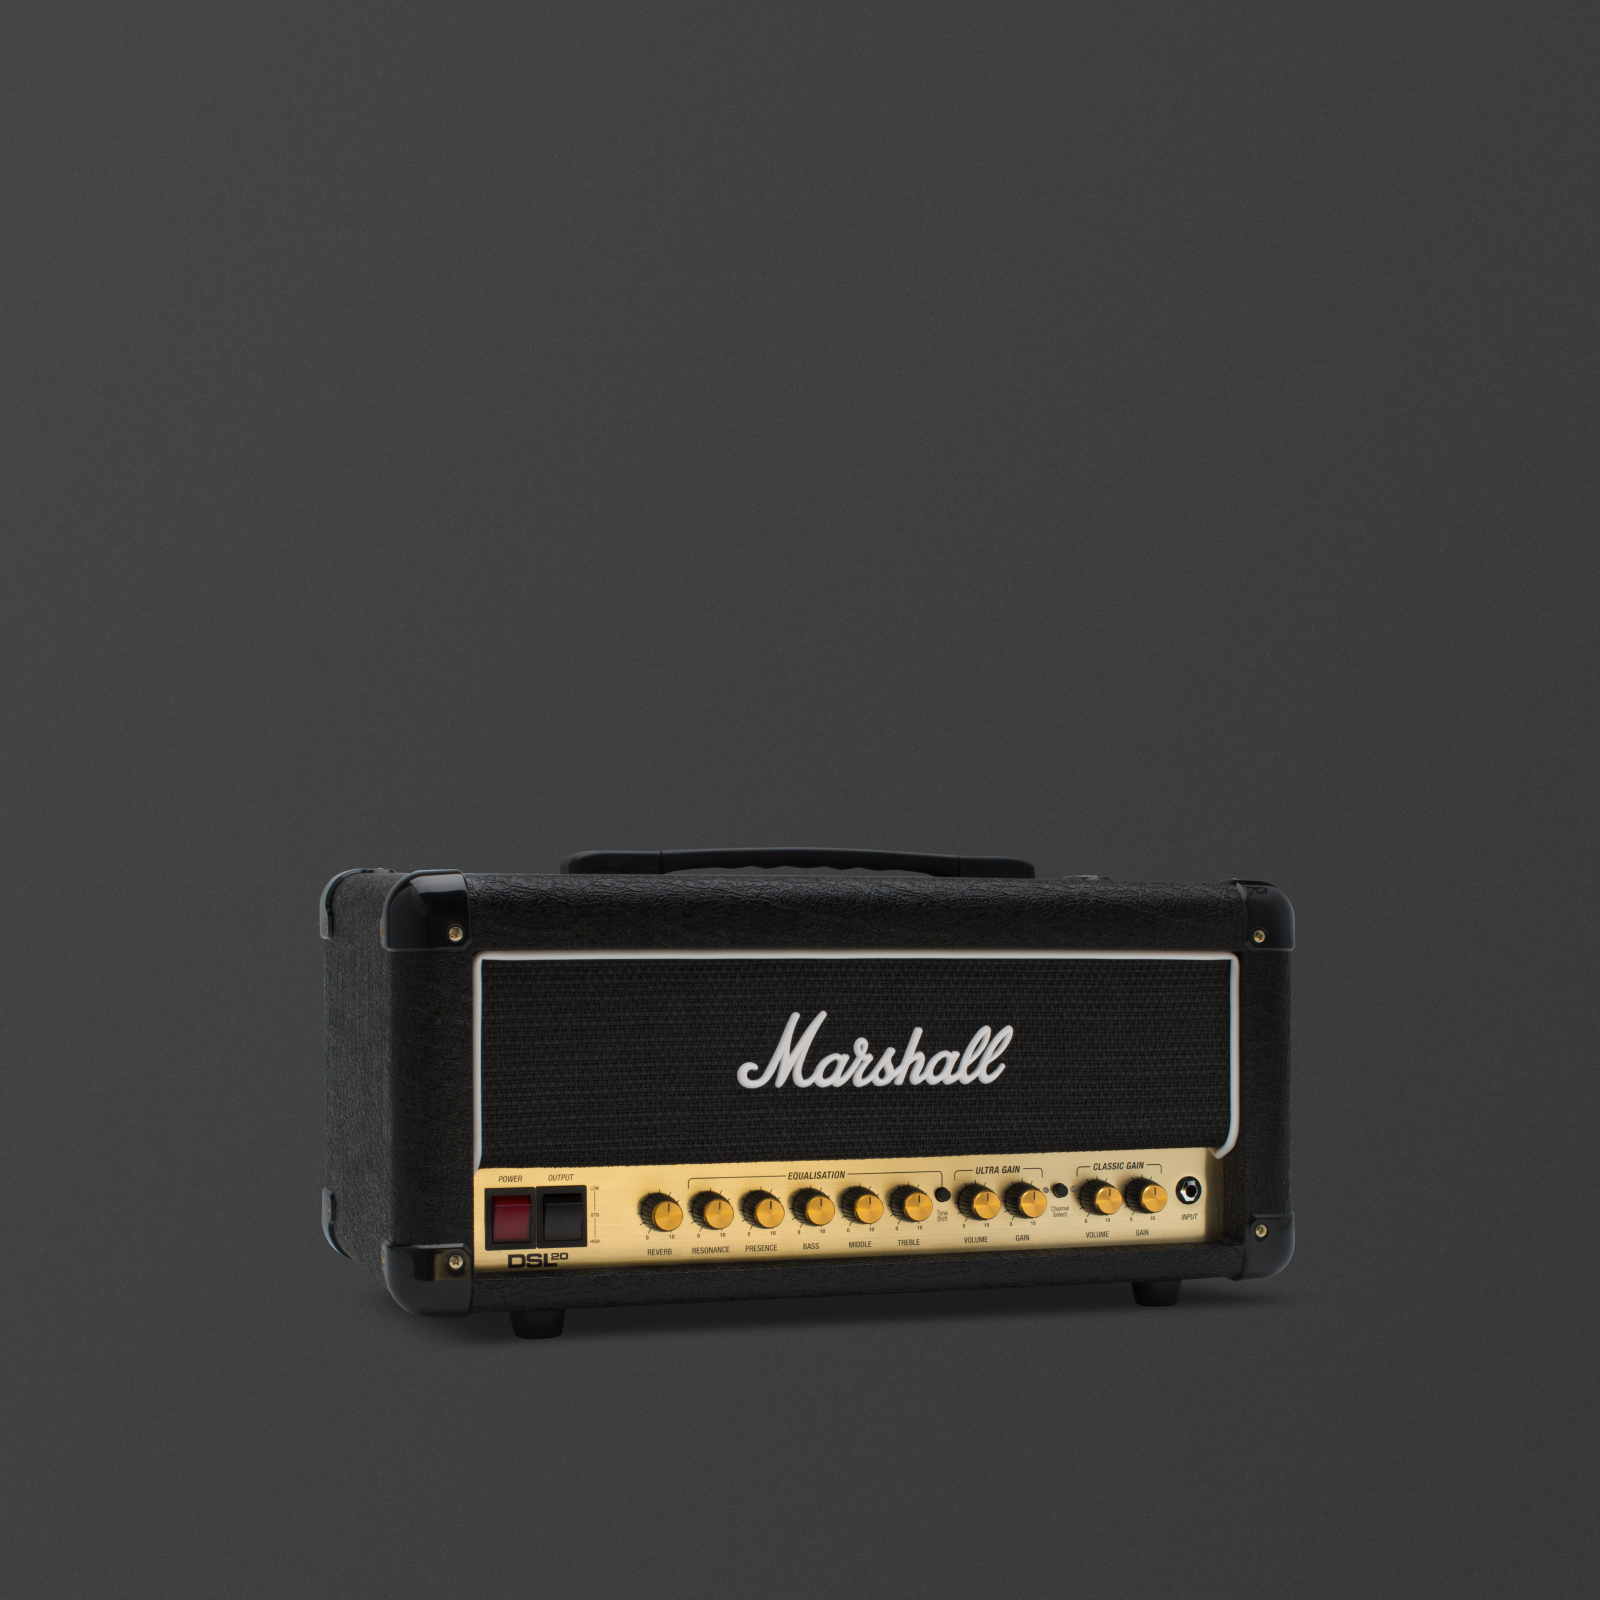 Imagen ligeramente angulada de la parte frontal del amplificador Marshall DSL20 Head.